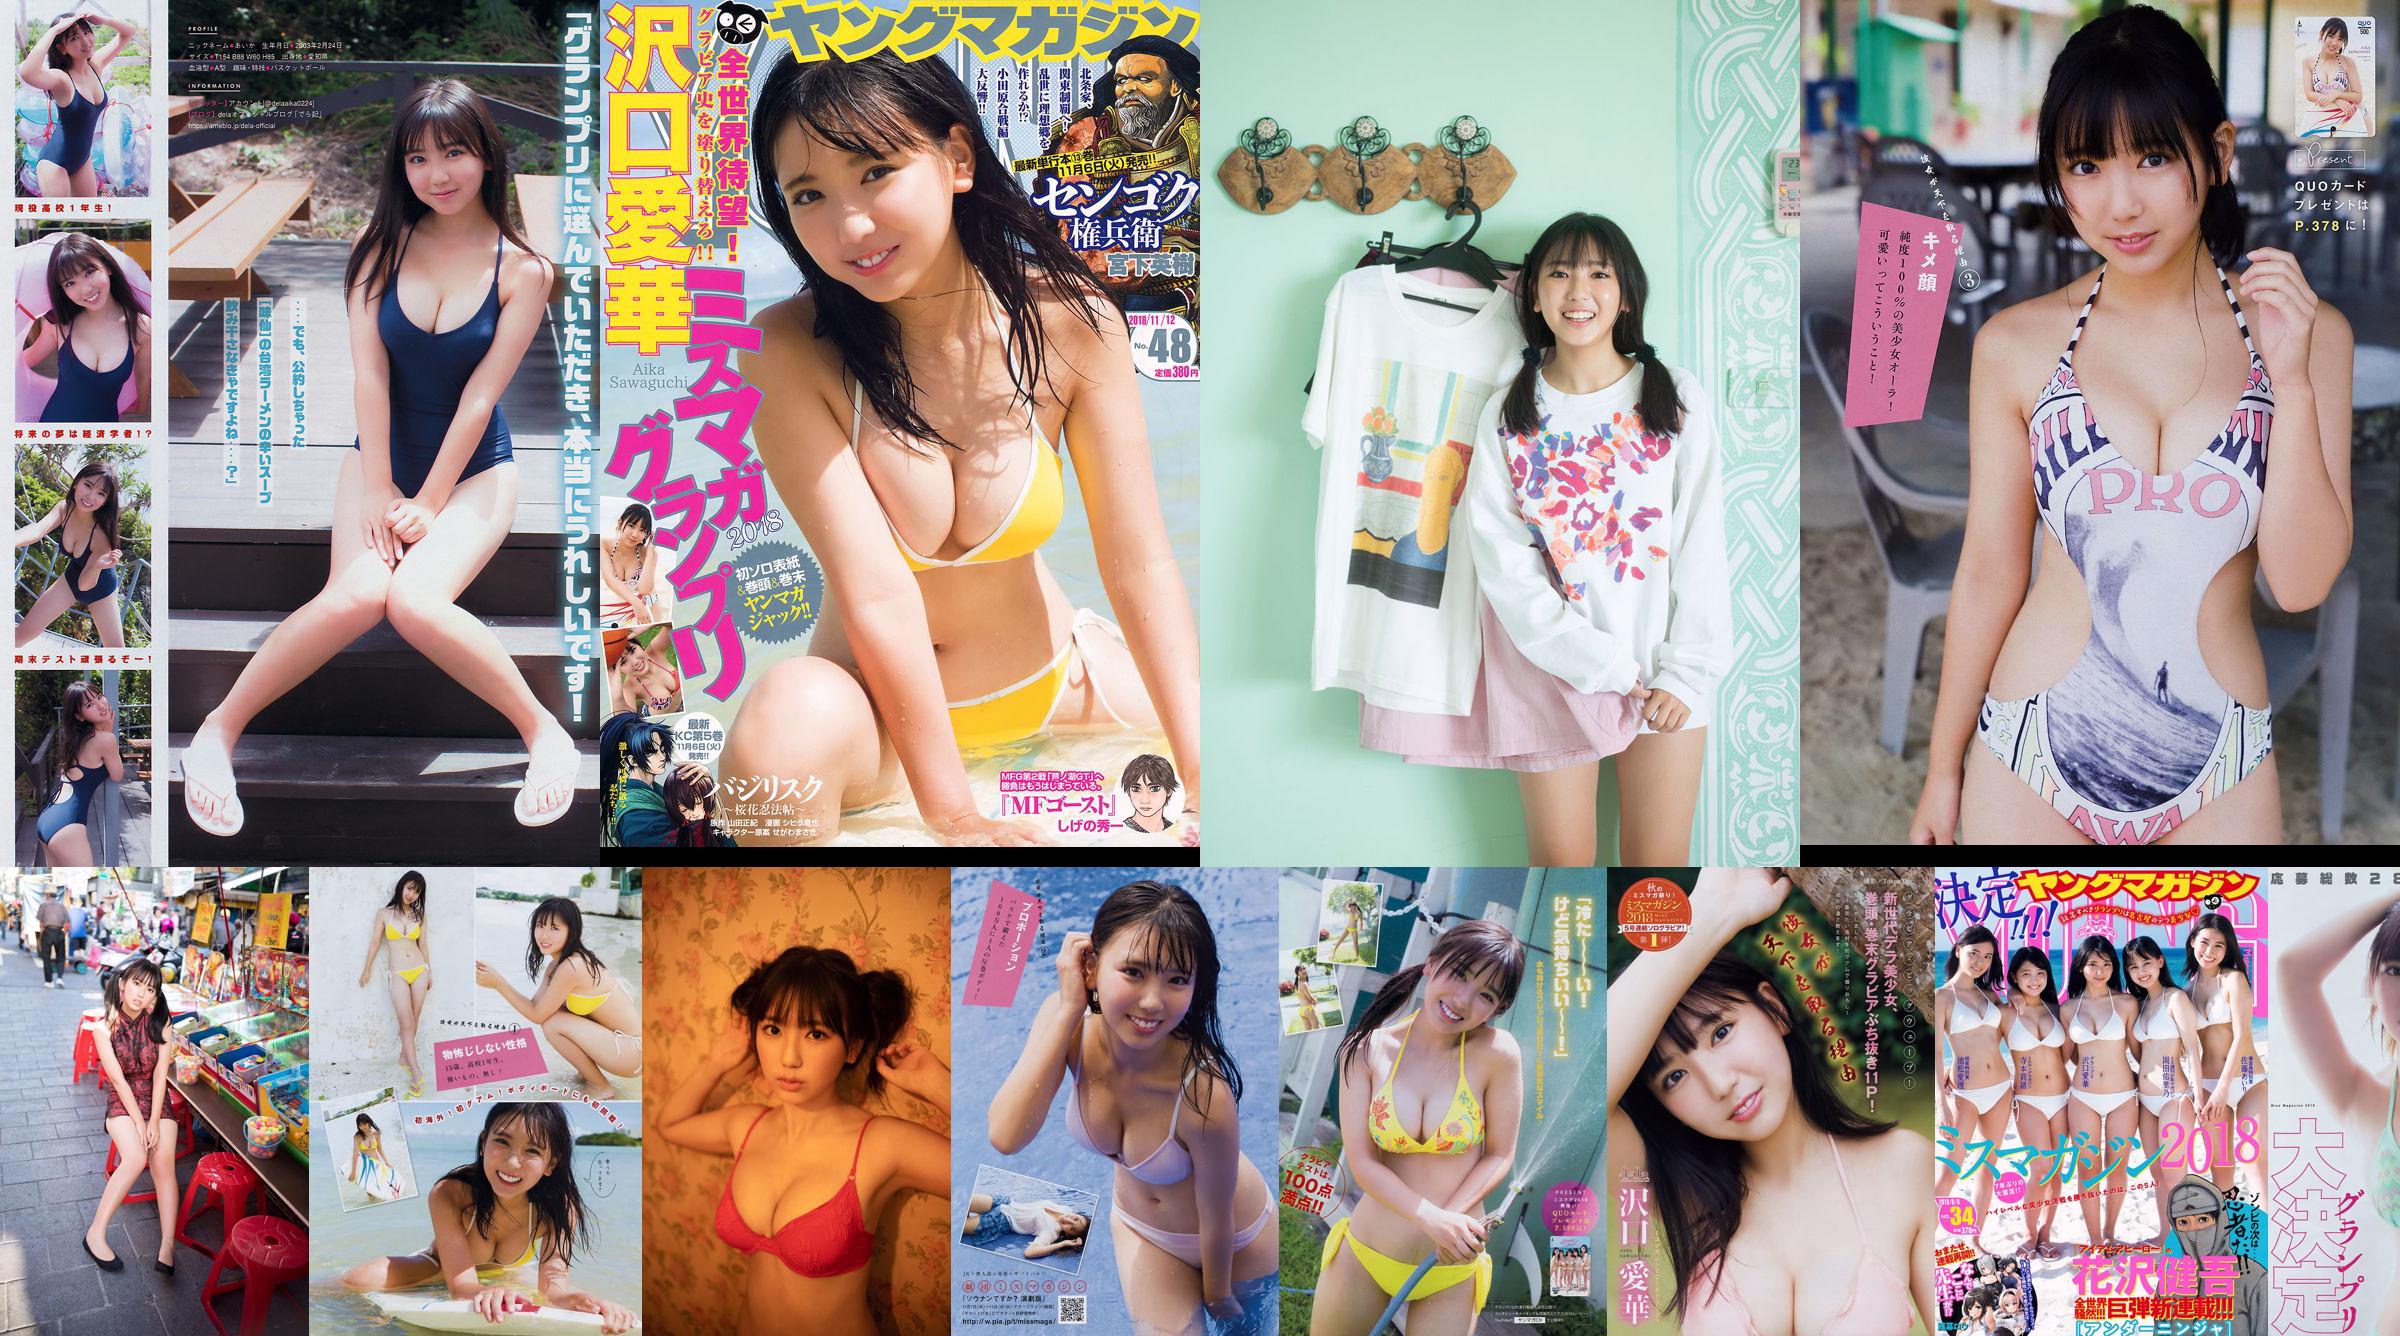 [Young Magazine] Aika Sawaguchi Rio Teramoto Airi Ikematsu Yurino Okada Airi Sato 2018 Photographie n ° 34 No.19e55e Page 2